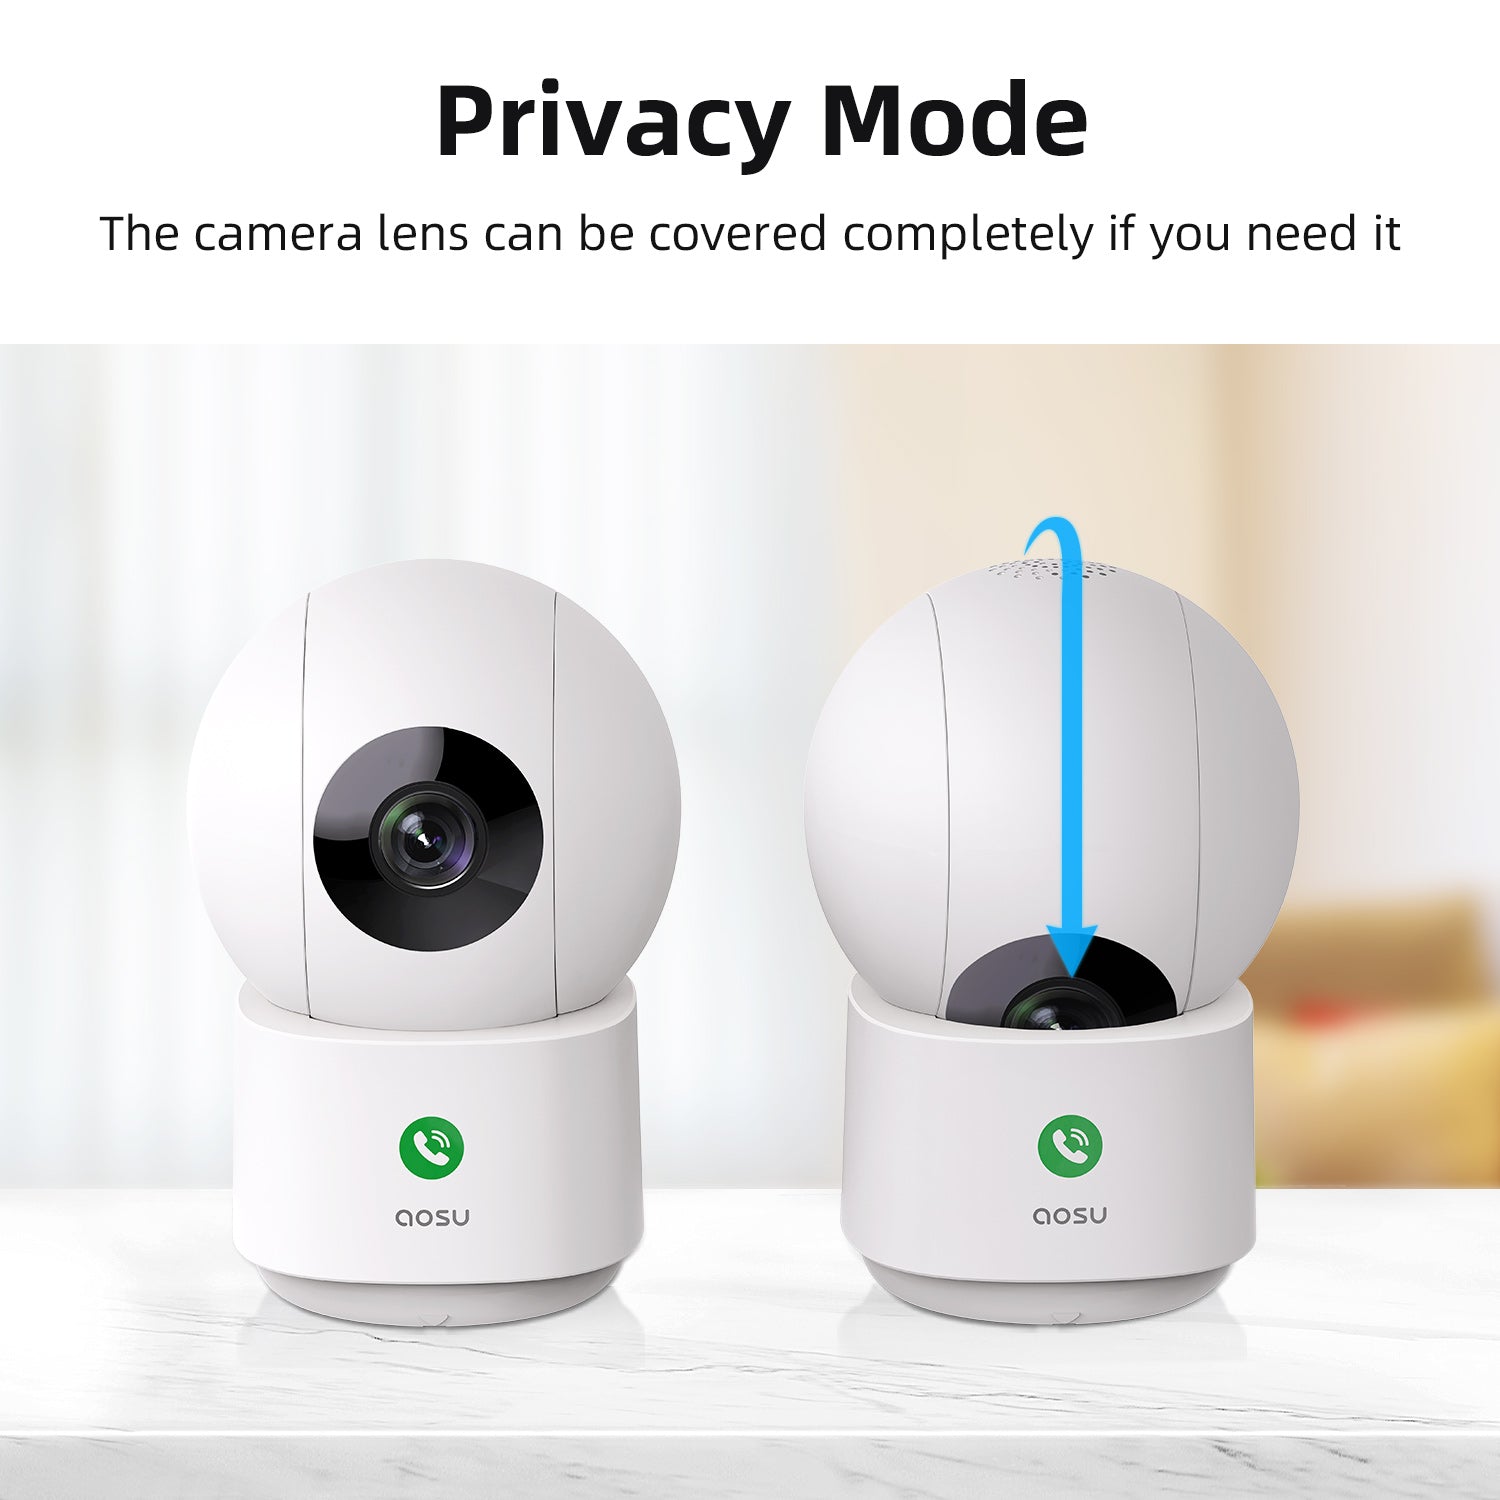 privacy mode